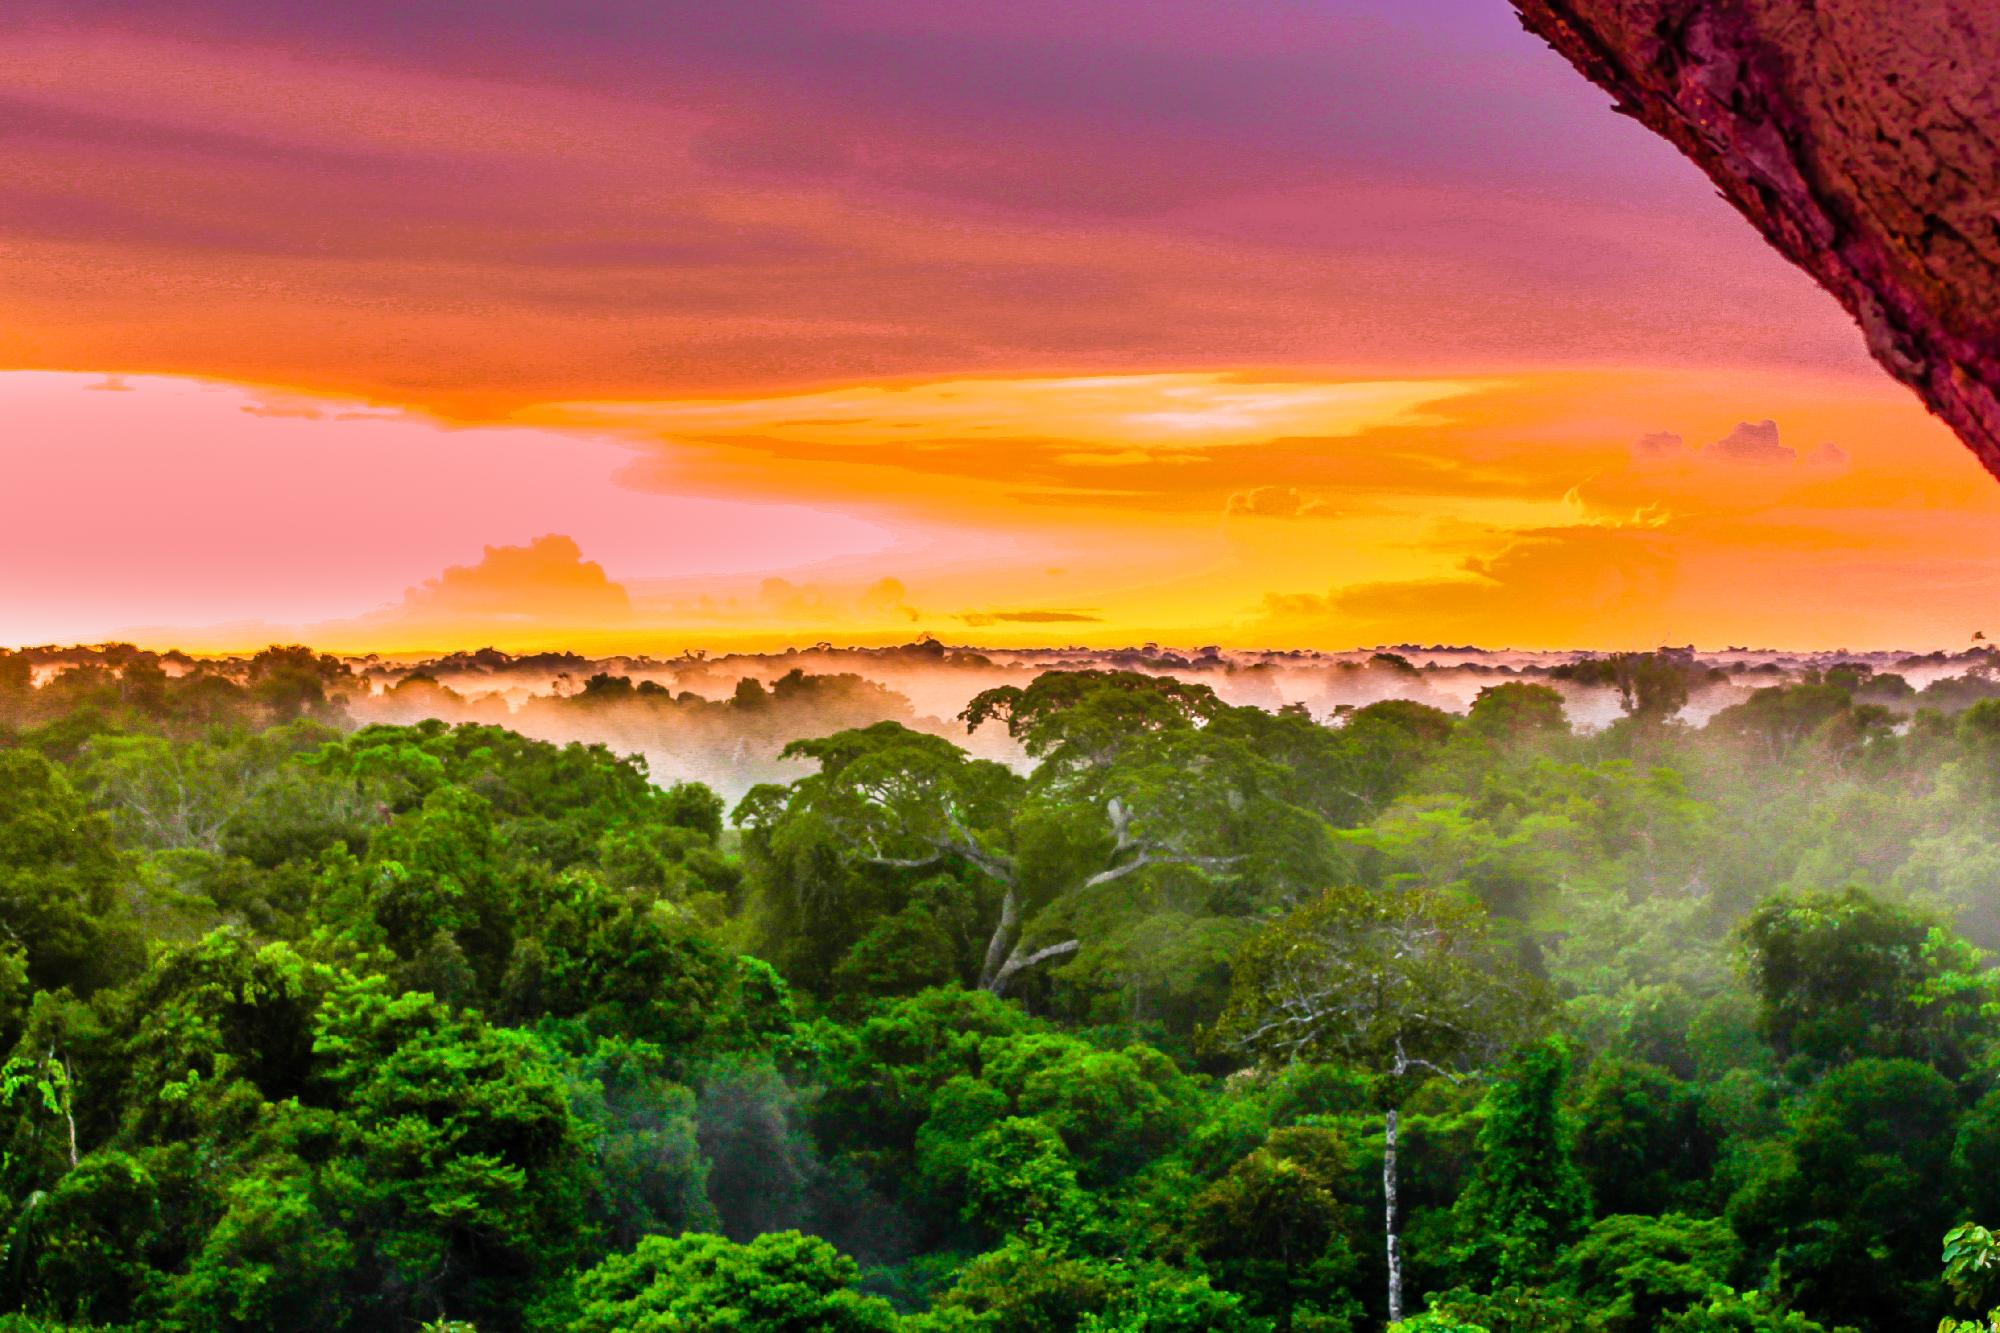 A keresőcsapatok az eltűnt brithez tartozó tárgyakra bukkantak az Amazonasban